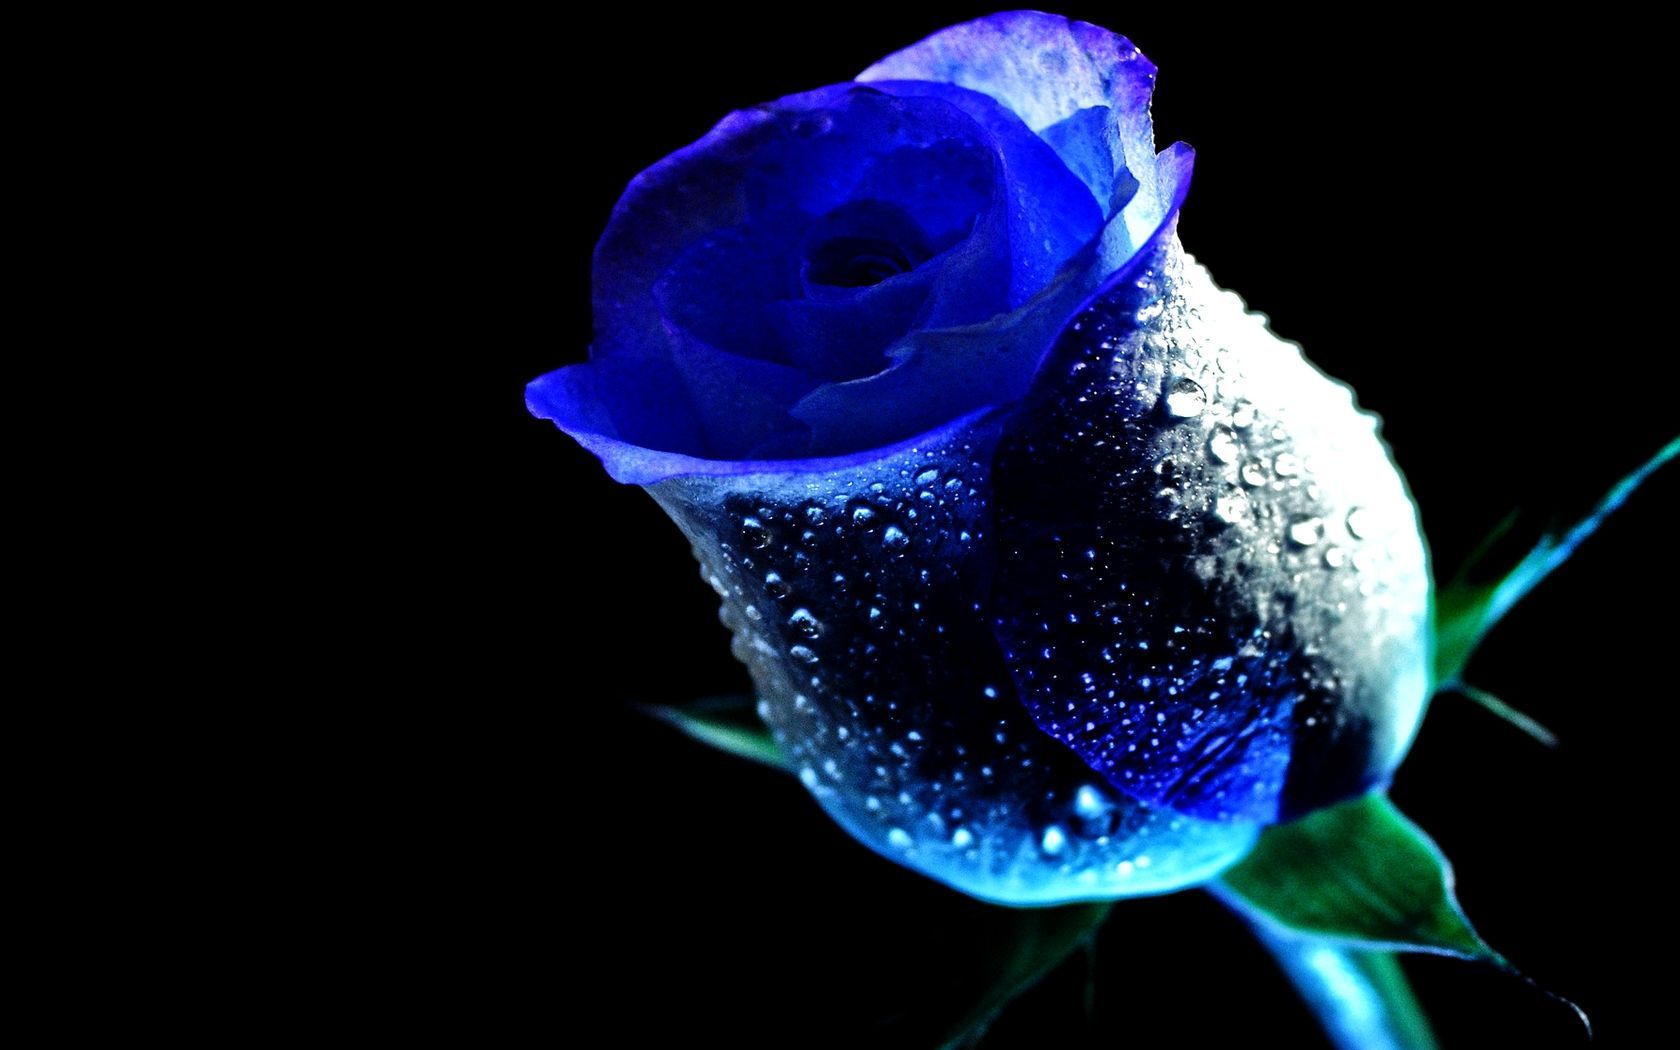 Blue Roses. WET ROSE, blue, dew, drop, flower, rose, water. Blue